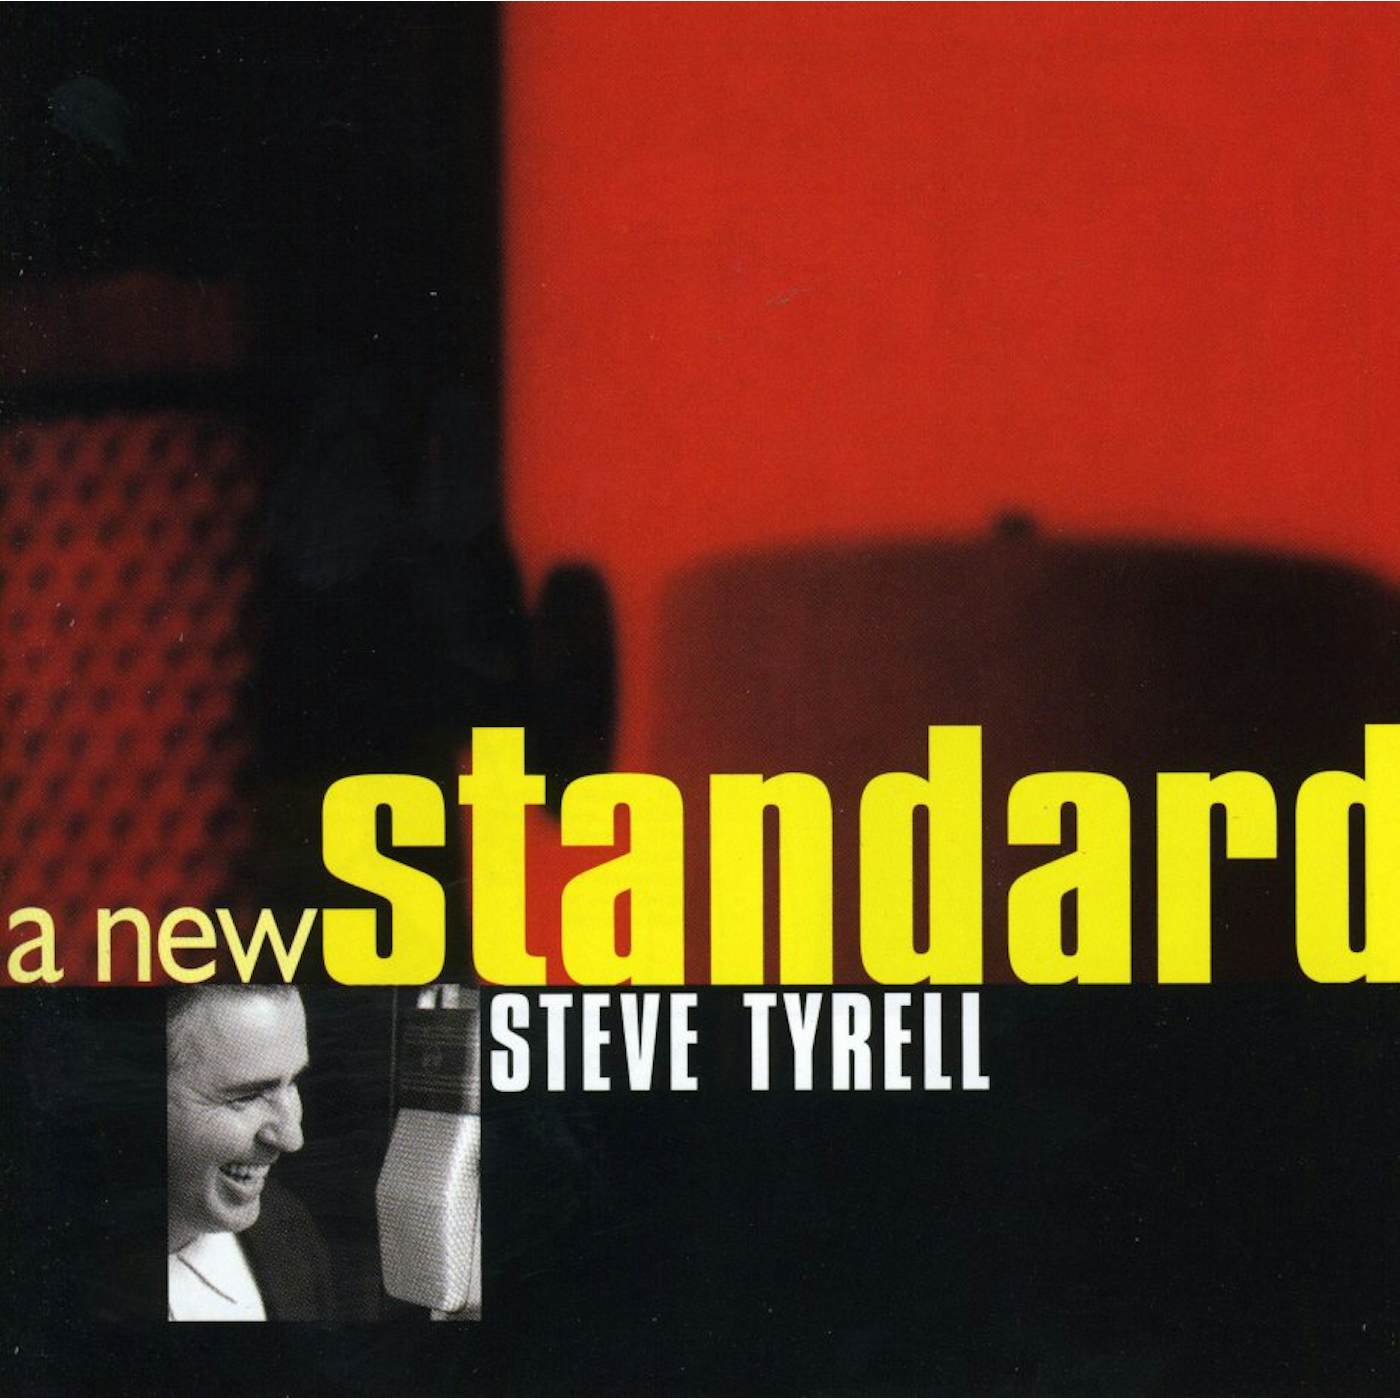 Steve Tyrell NEW STANDARD CD